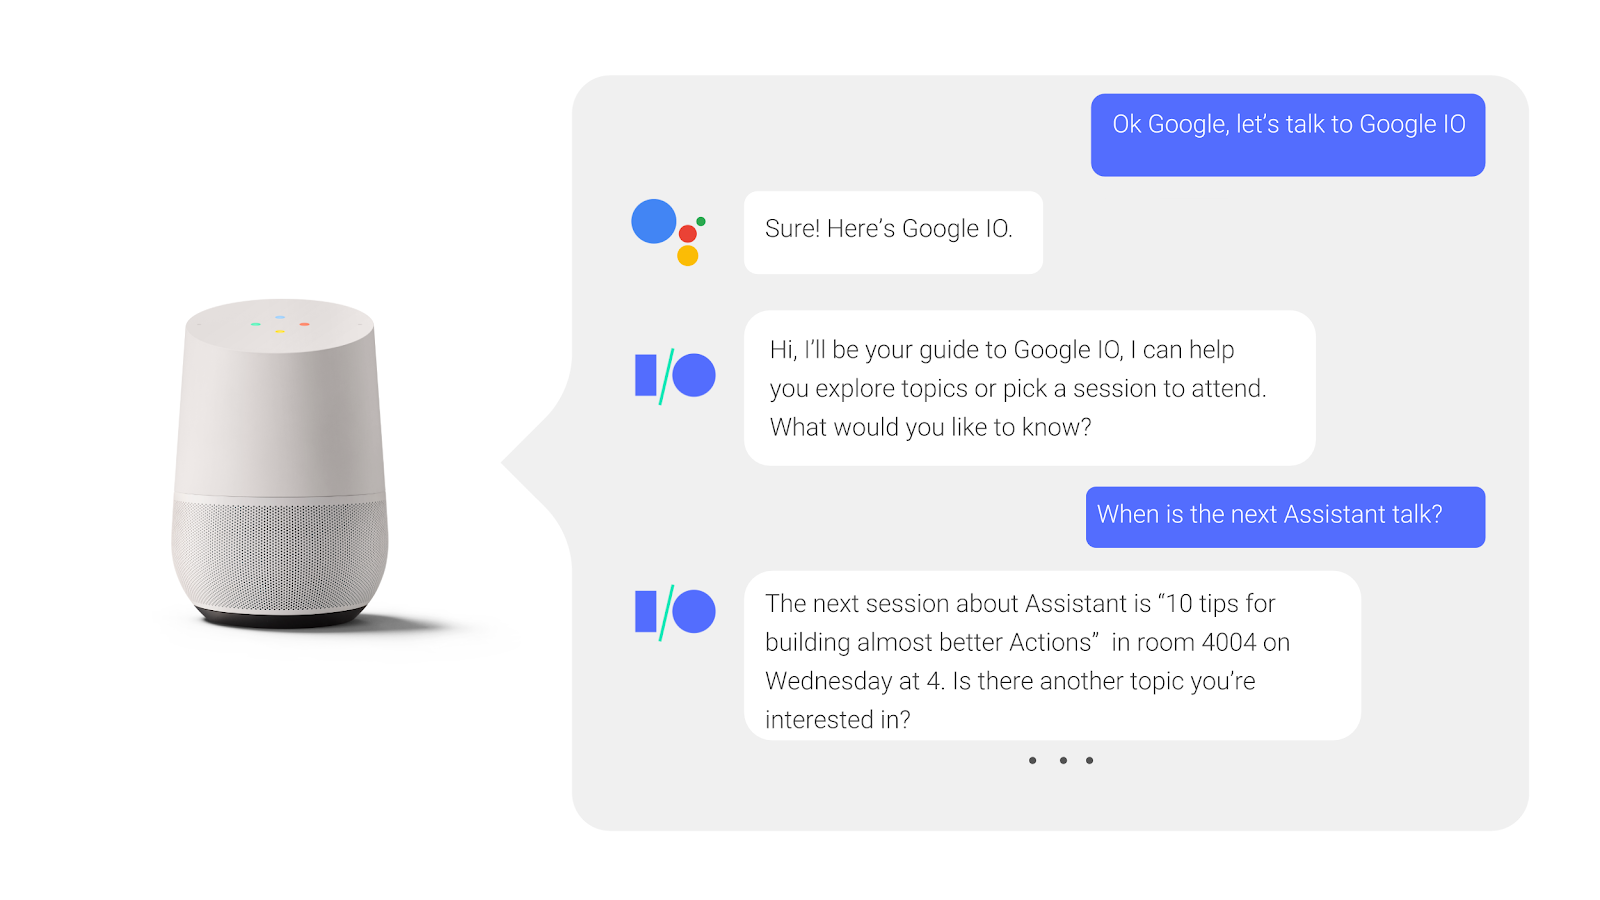 Dalam
    percakapan bolak-balik dengan Asisten Google, pengguna akan bertanya
    dan menerima jawaban saat sesi konferensi sedang berlangsung.